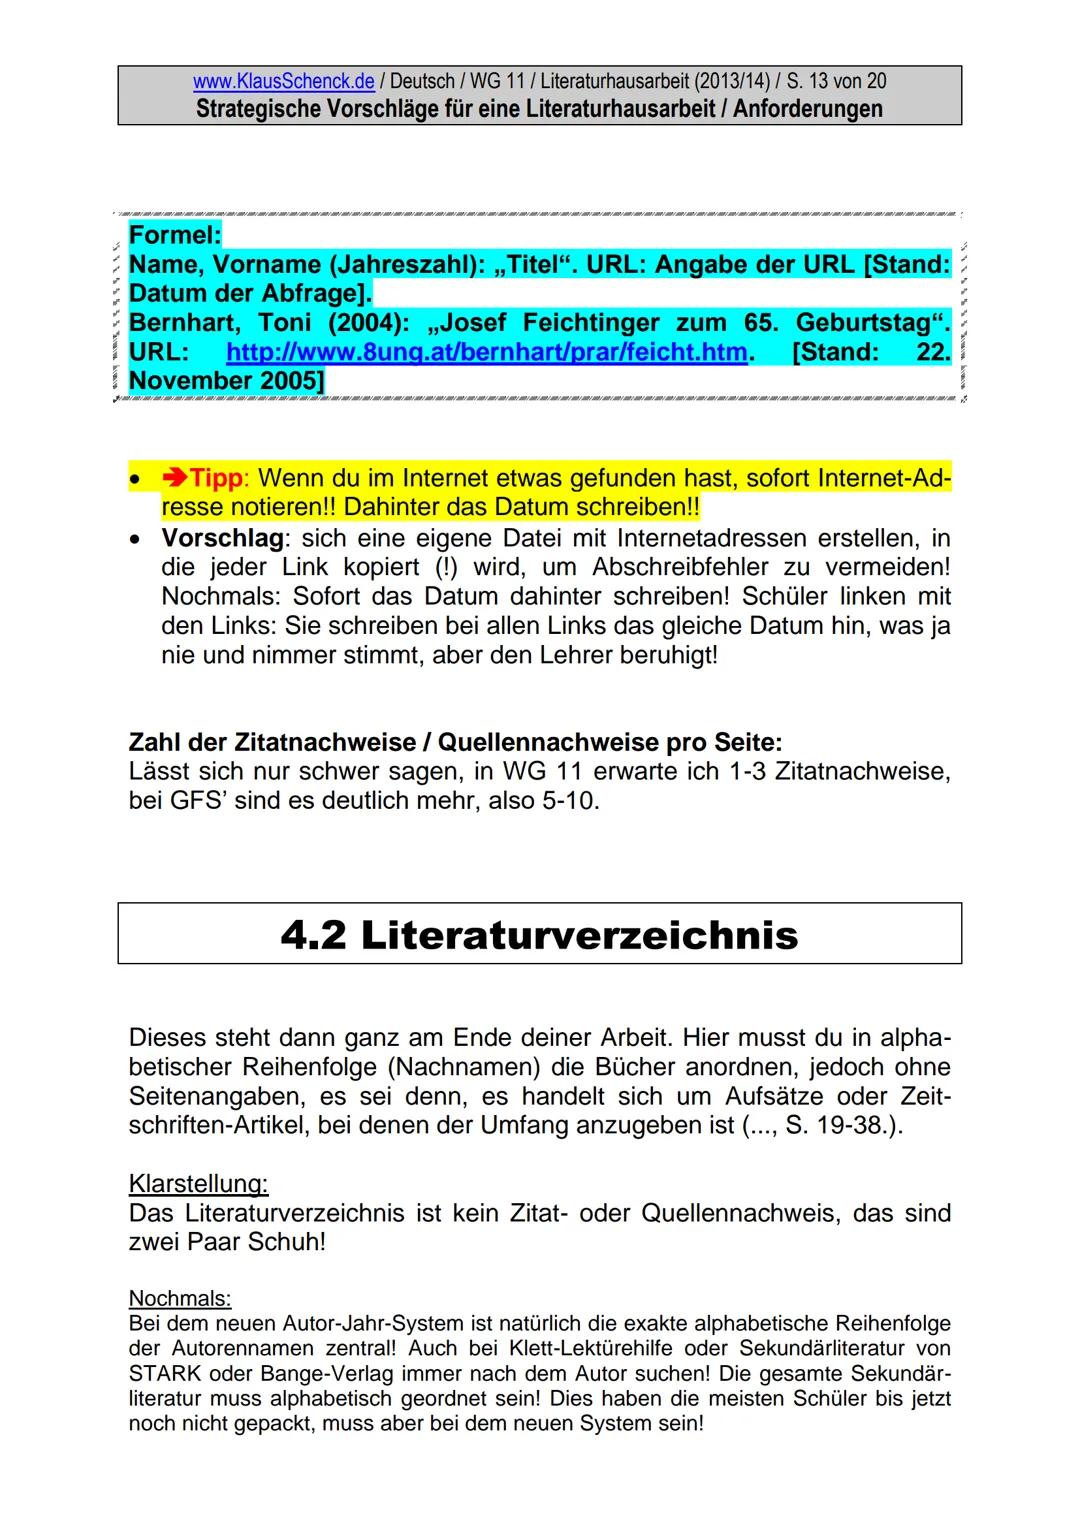 www.KlausSchenck.de / Deutsch / Literatur / Dürrenmatt: „Besuch d. alten Dame" / S. 5 von 30
Sophia Ködel: Literaturhausarbeit (WG 11) (Diog